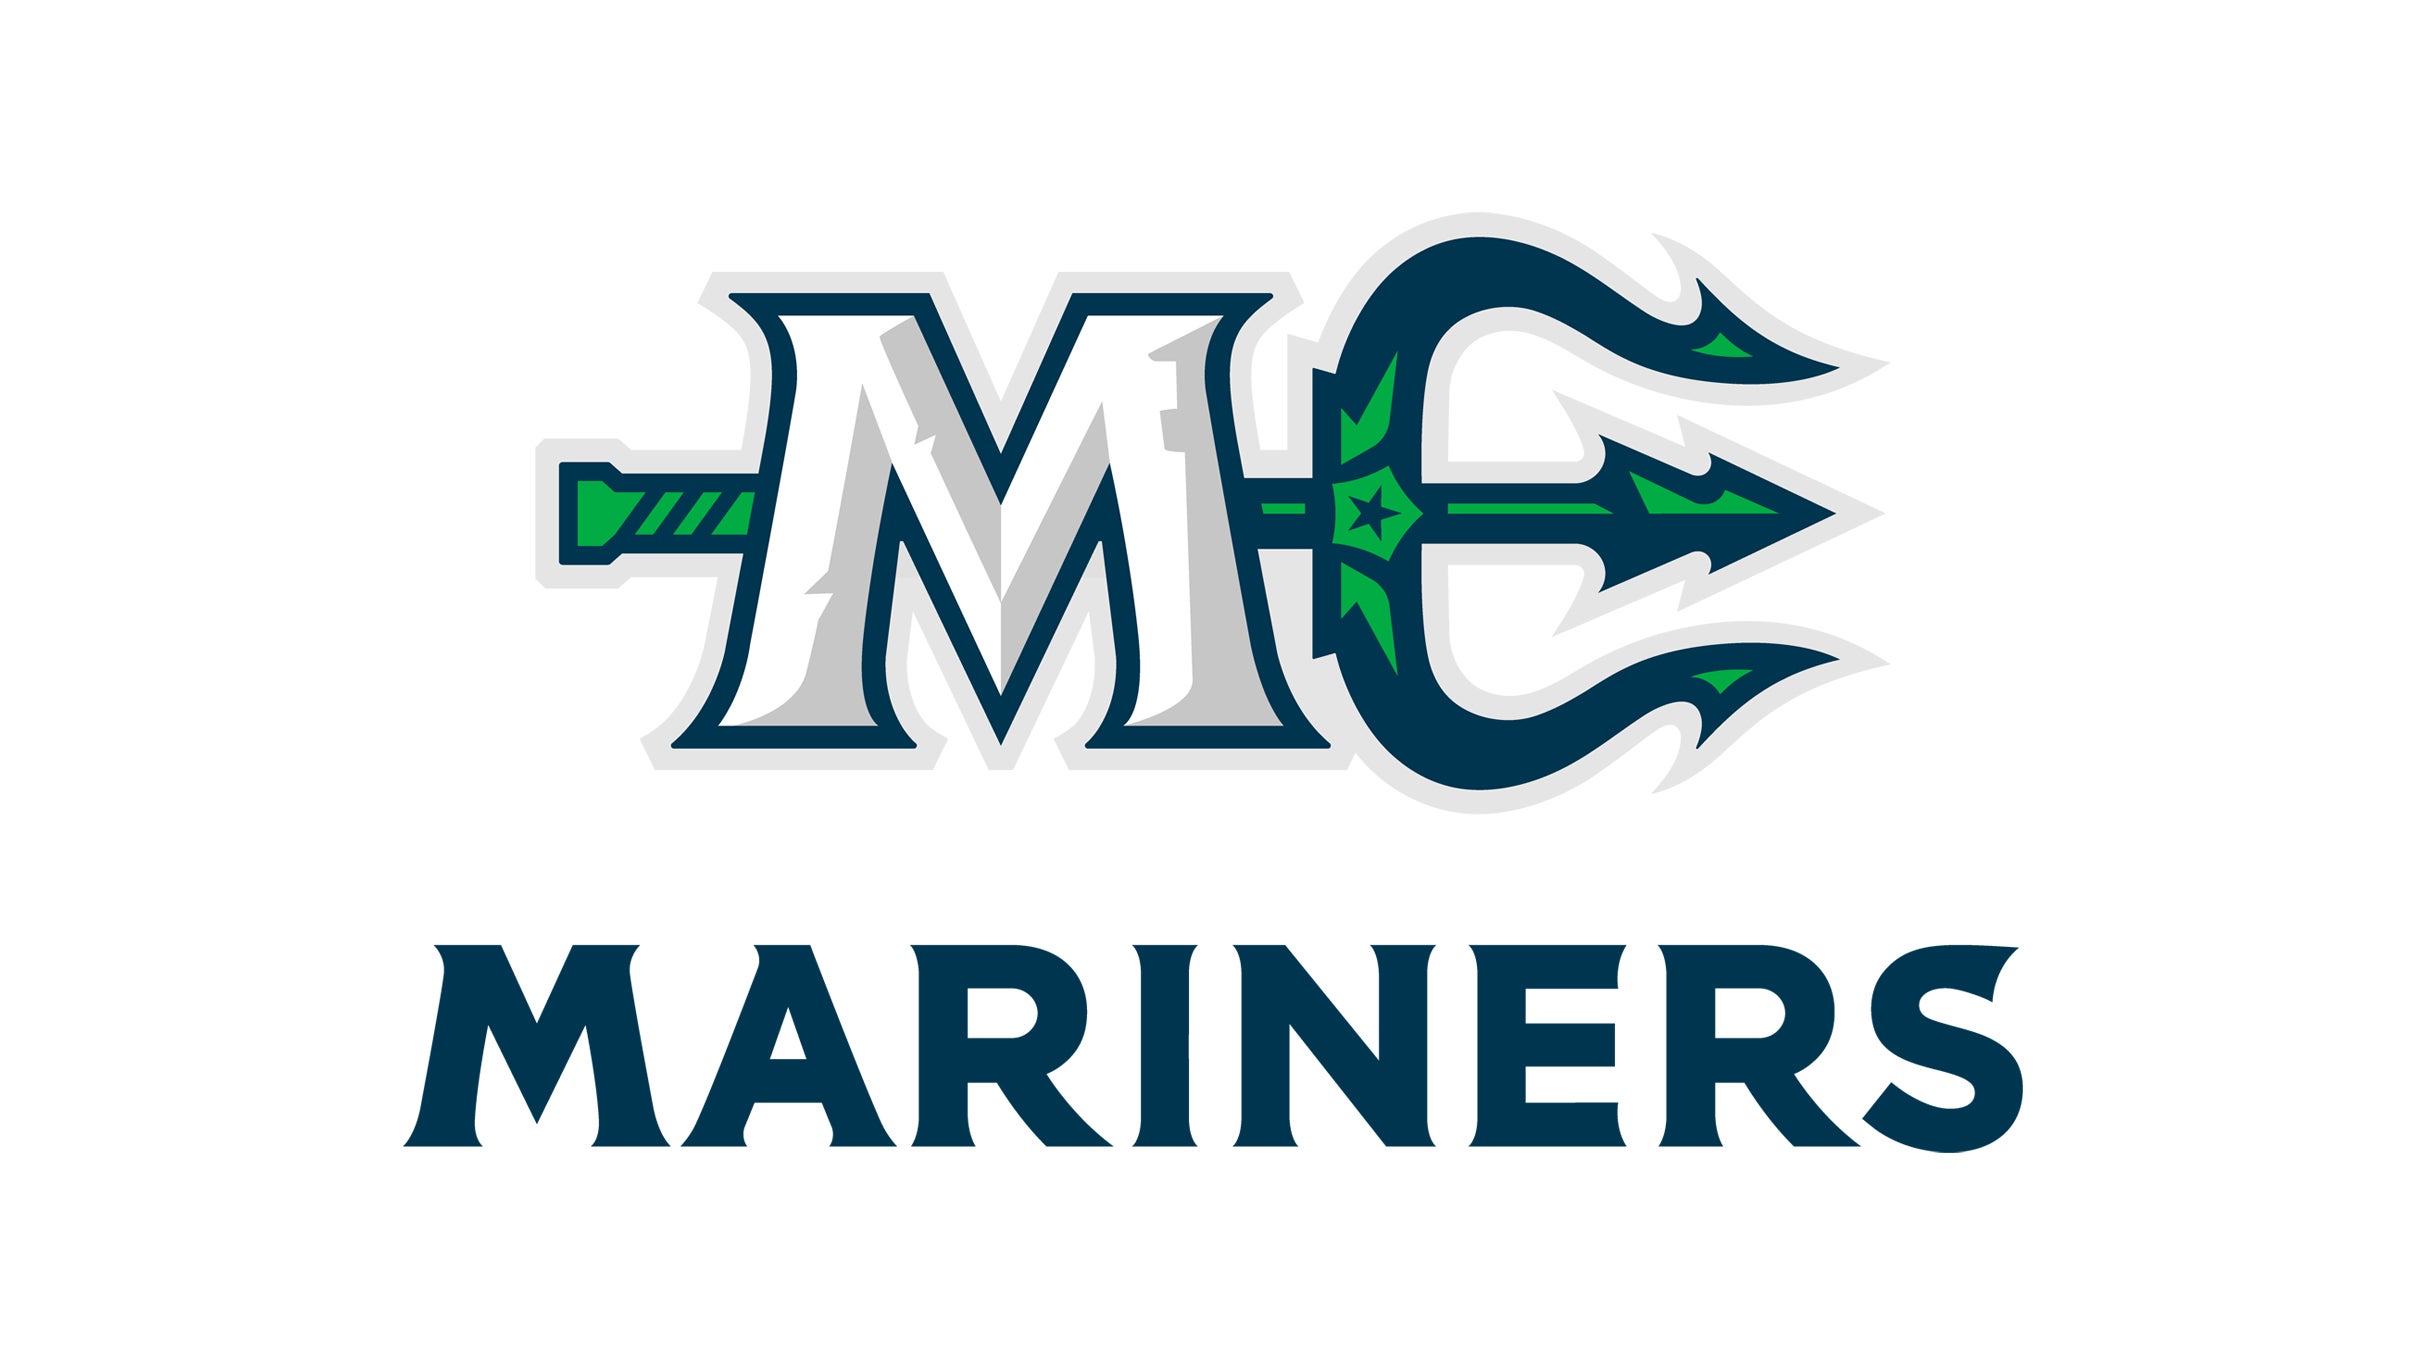 Maine Mariners Round 1 Game 5 at Cross Insurance Arena